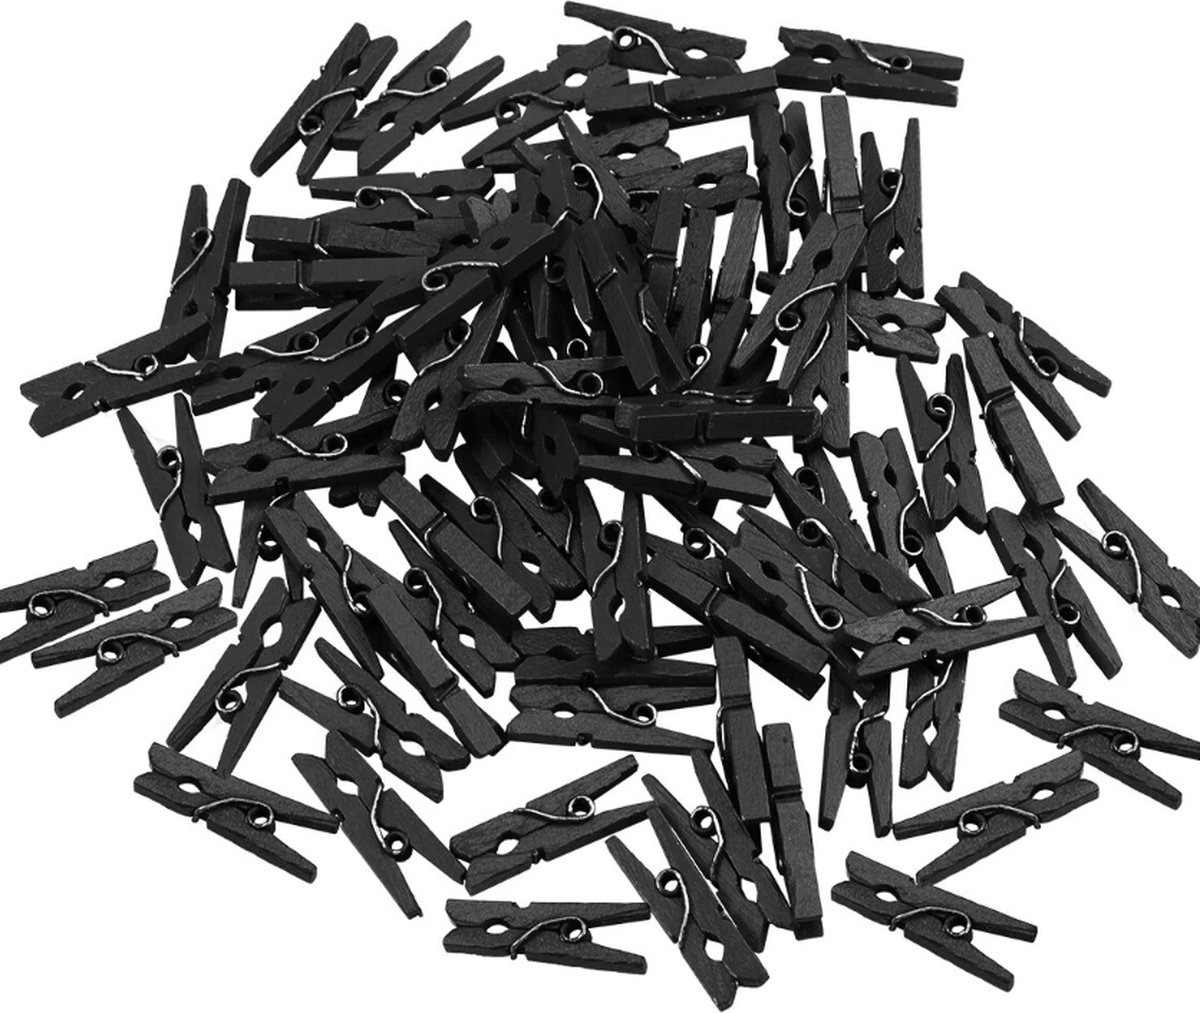 Knijpers - set van 100 mini knijpers zwart hout - decoratie - knutselen - kaarten en posters ophangen - Merkloos